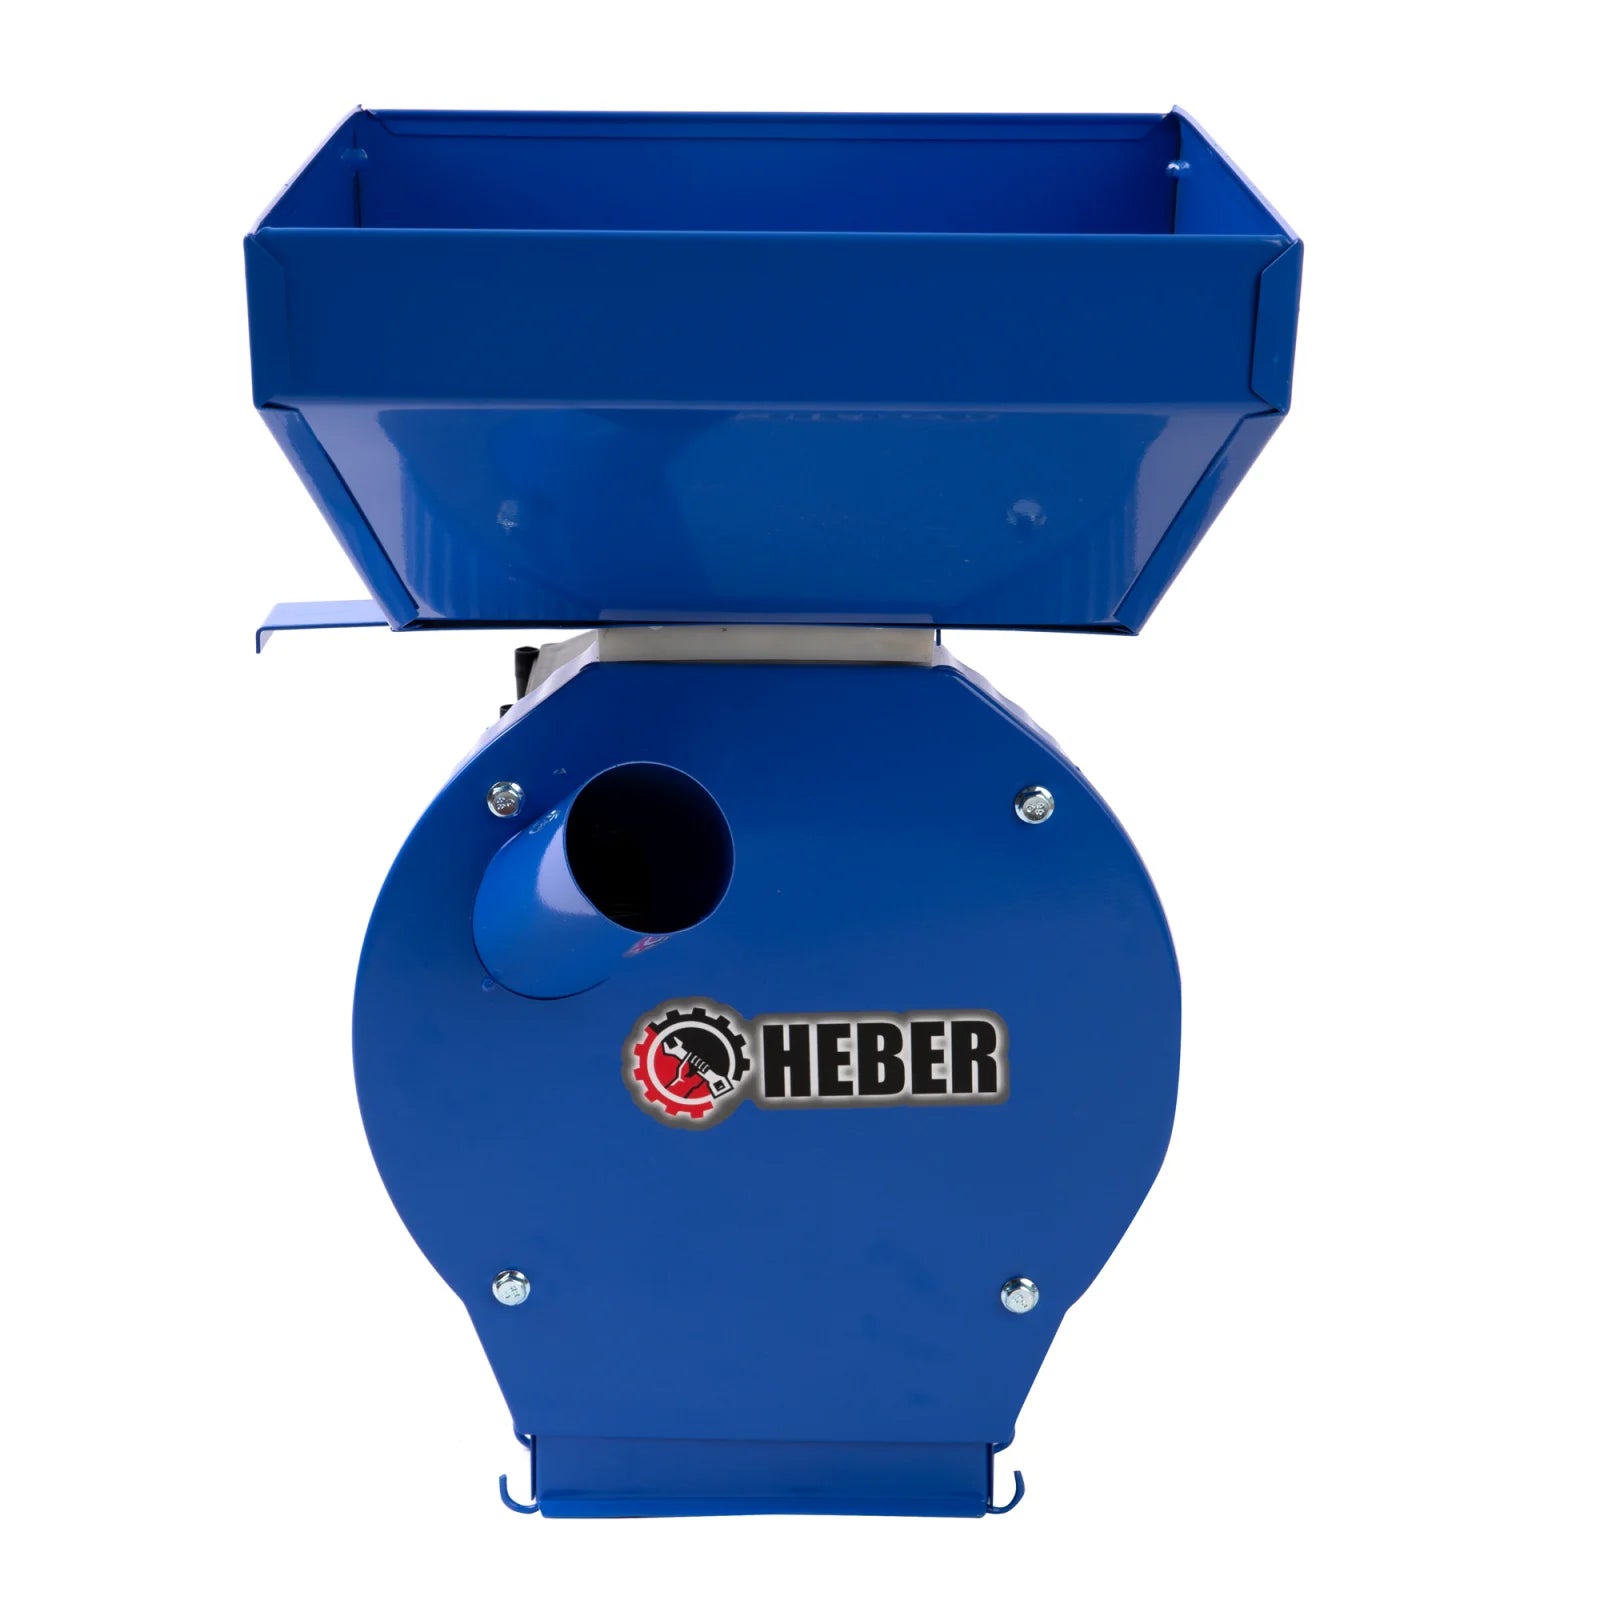 Moara electrica Heber®, 3.9 kw 3000 rpm motor 100% cupru, 300 kg/ora, cuva mare, 20 de ciocanele pentru cereale si stiuleti